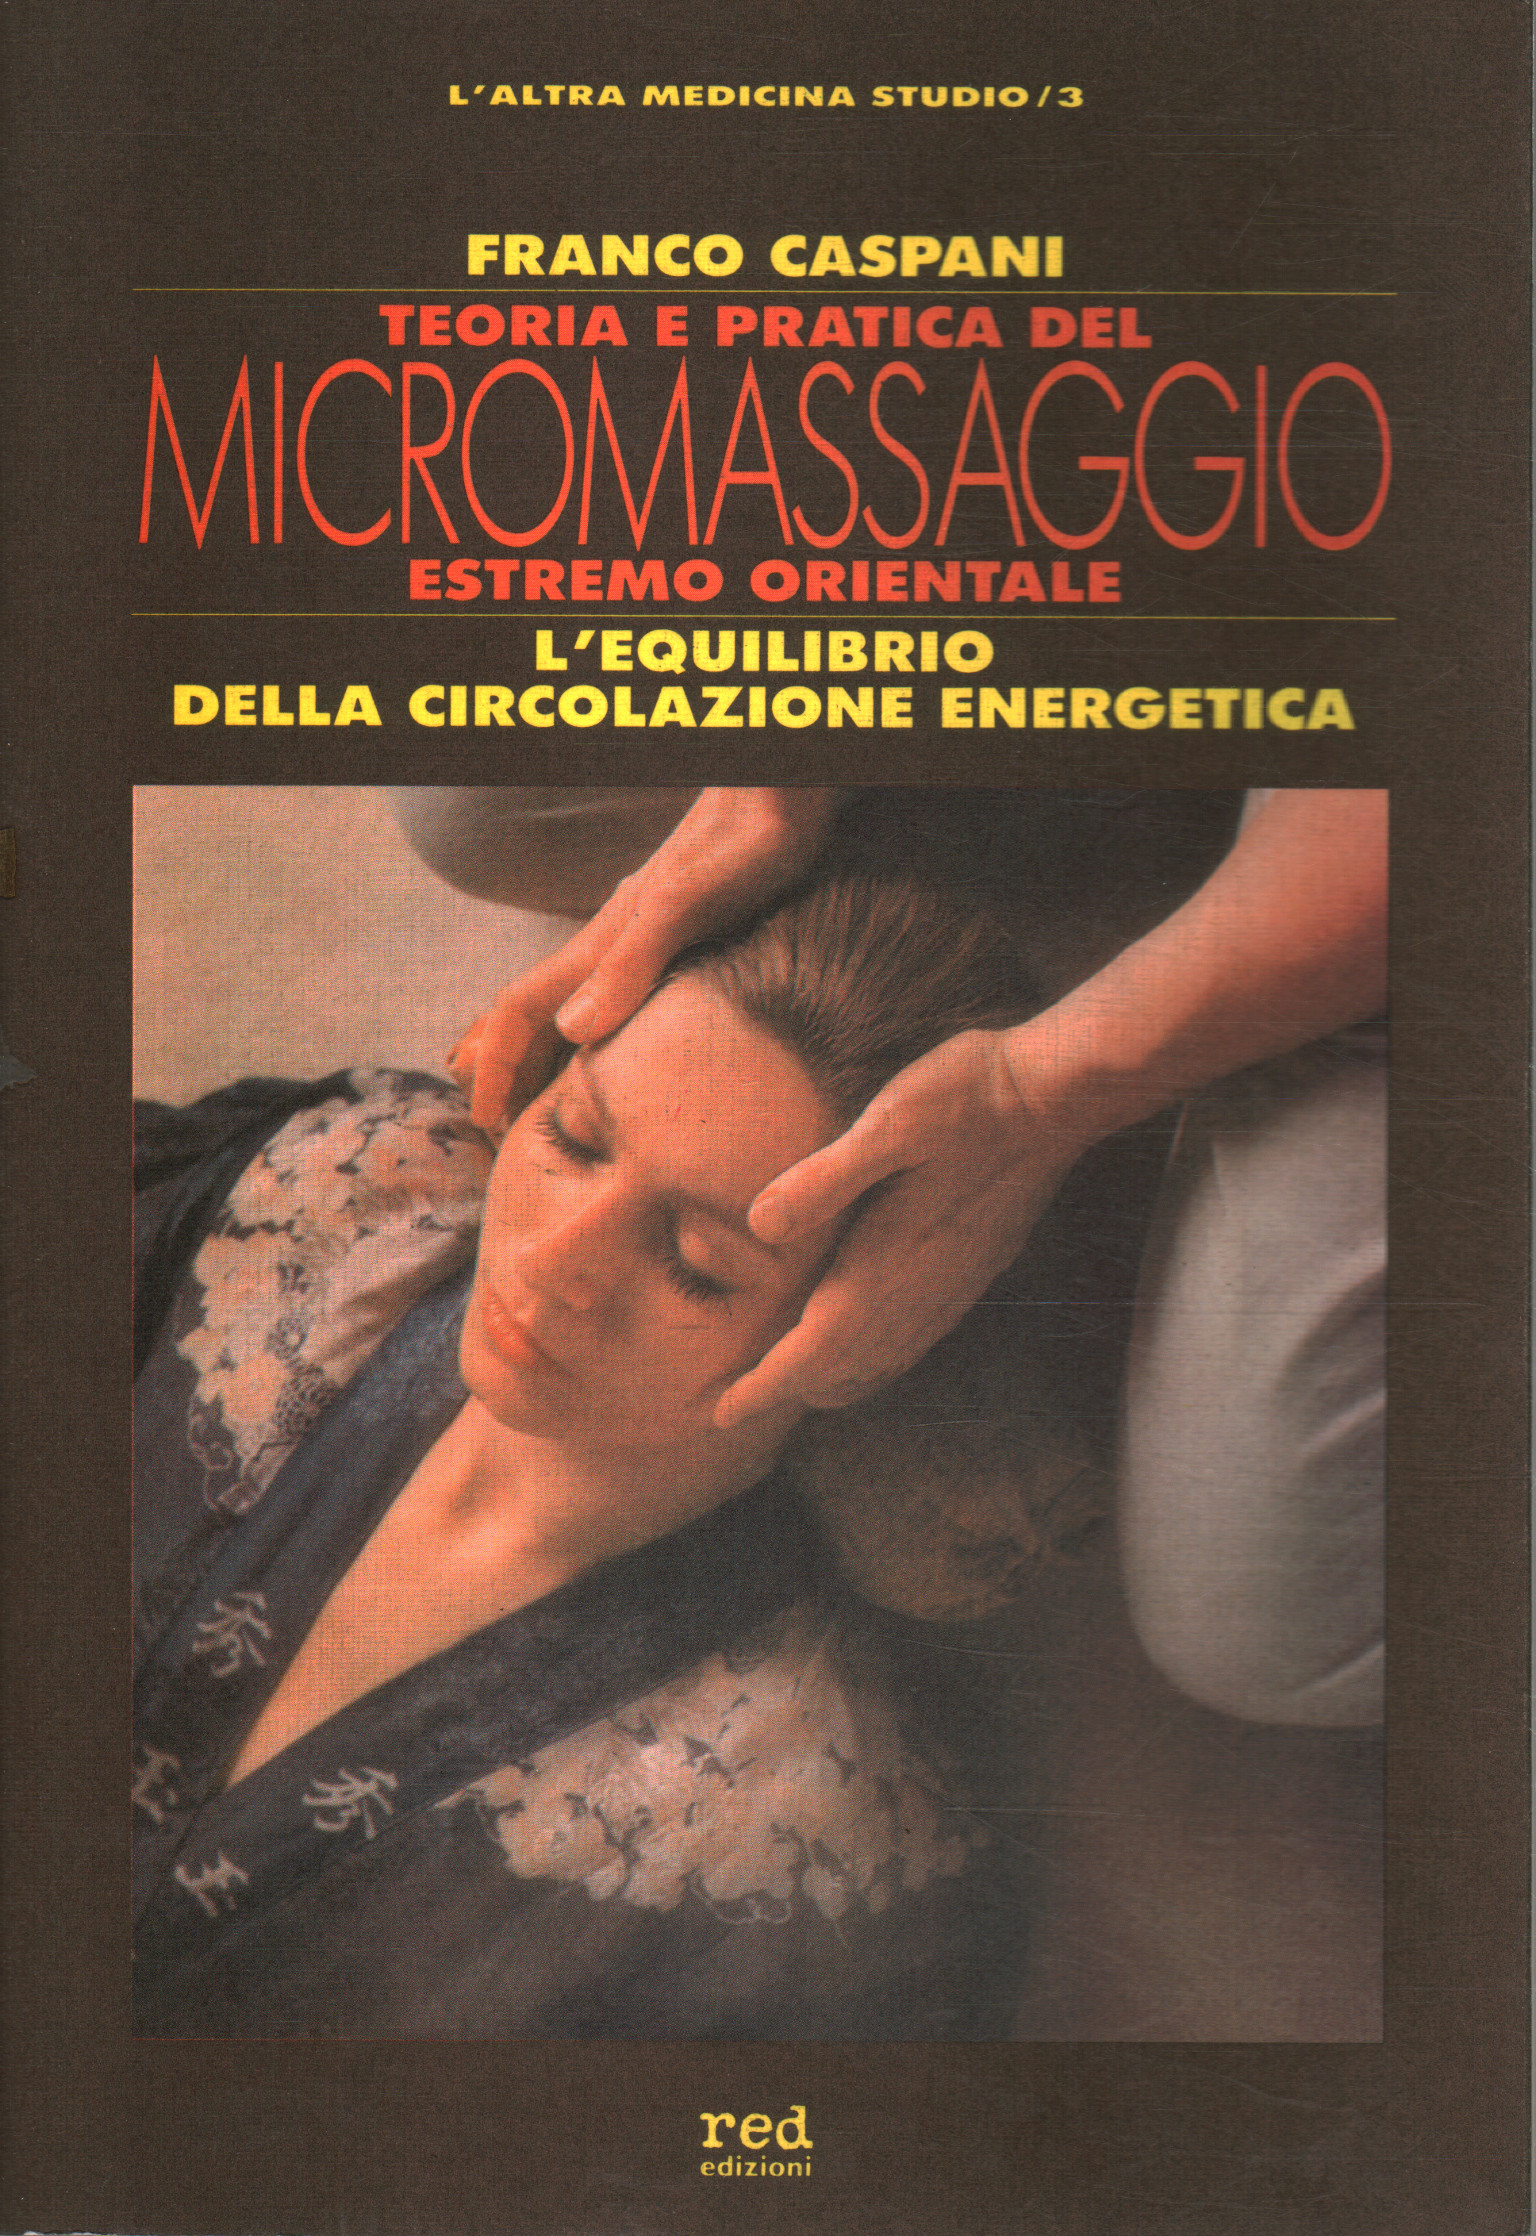 Théorie et pratique du micro massage oriental extrême, Franco Caspani